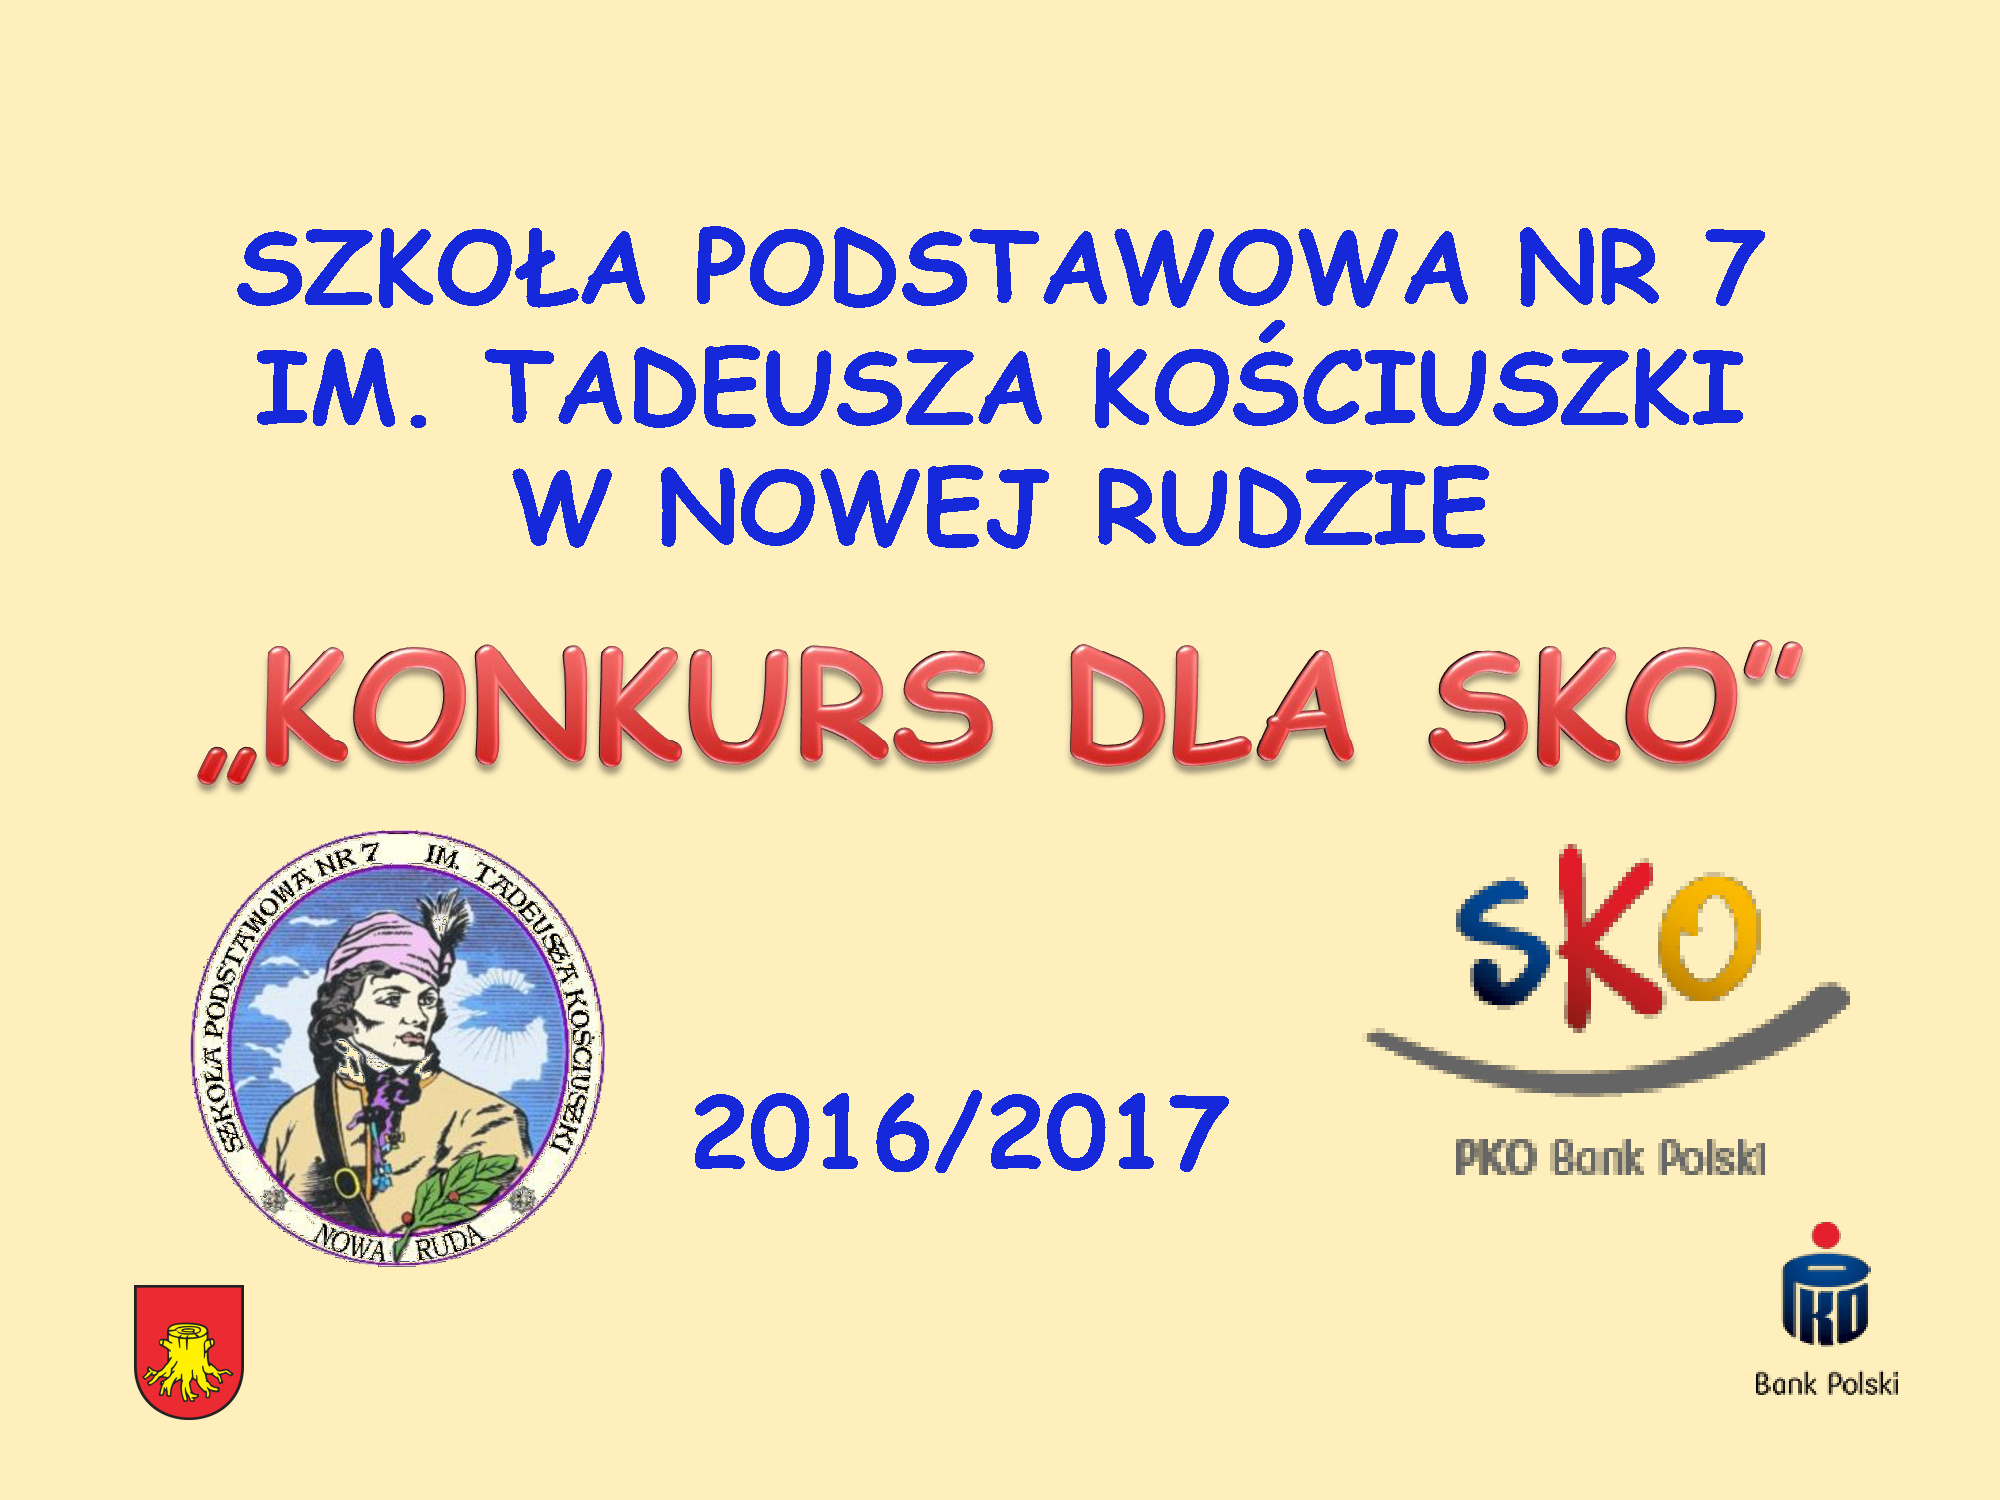 Szkoła Podstawowa nr 7 im. Tadeusza Kościuszki w Nowej Rudzie